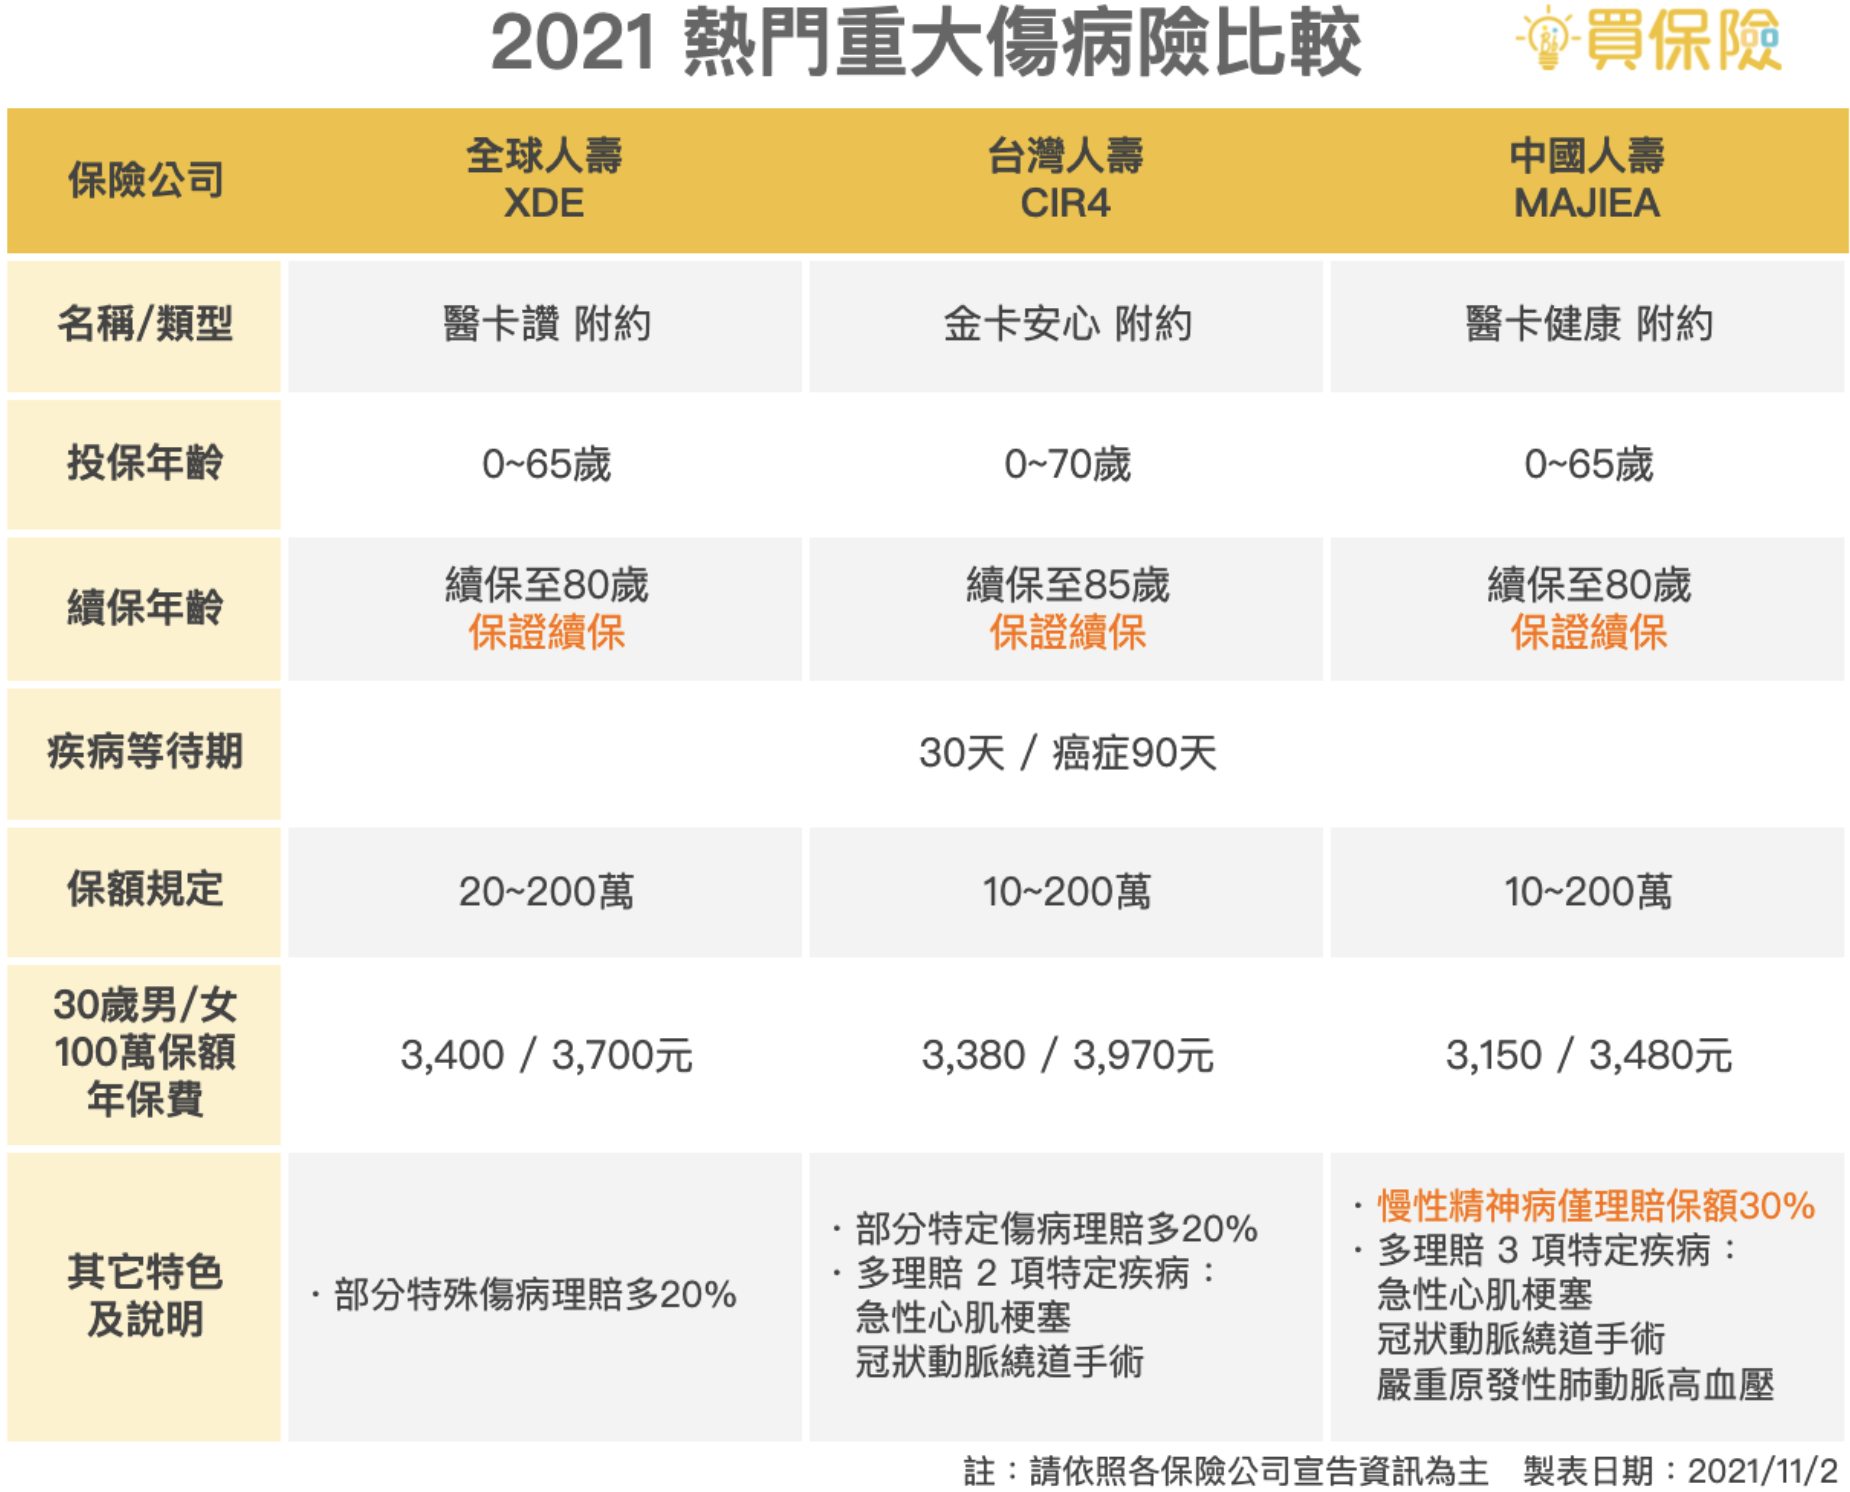 2021熱門重大傷病險推薦，全球人壽XDE、台灣人壽CIR4、中國人壽MAJIEA